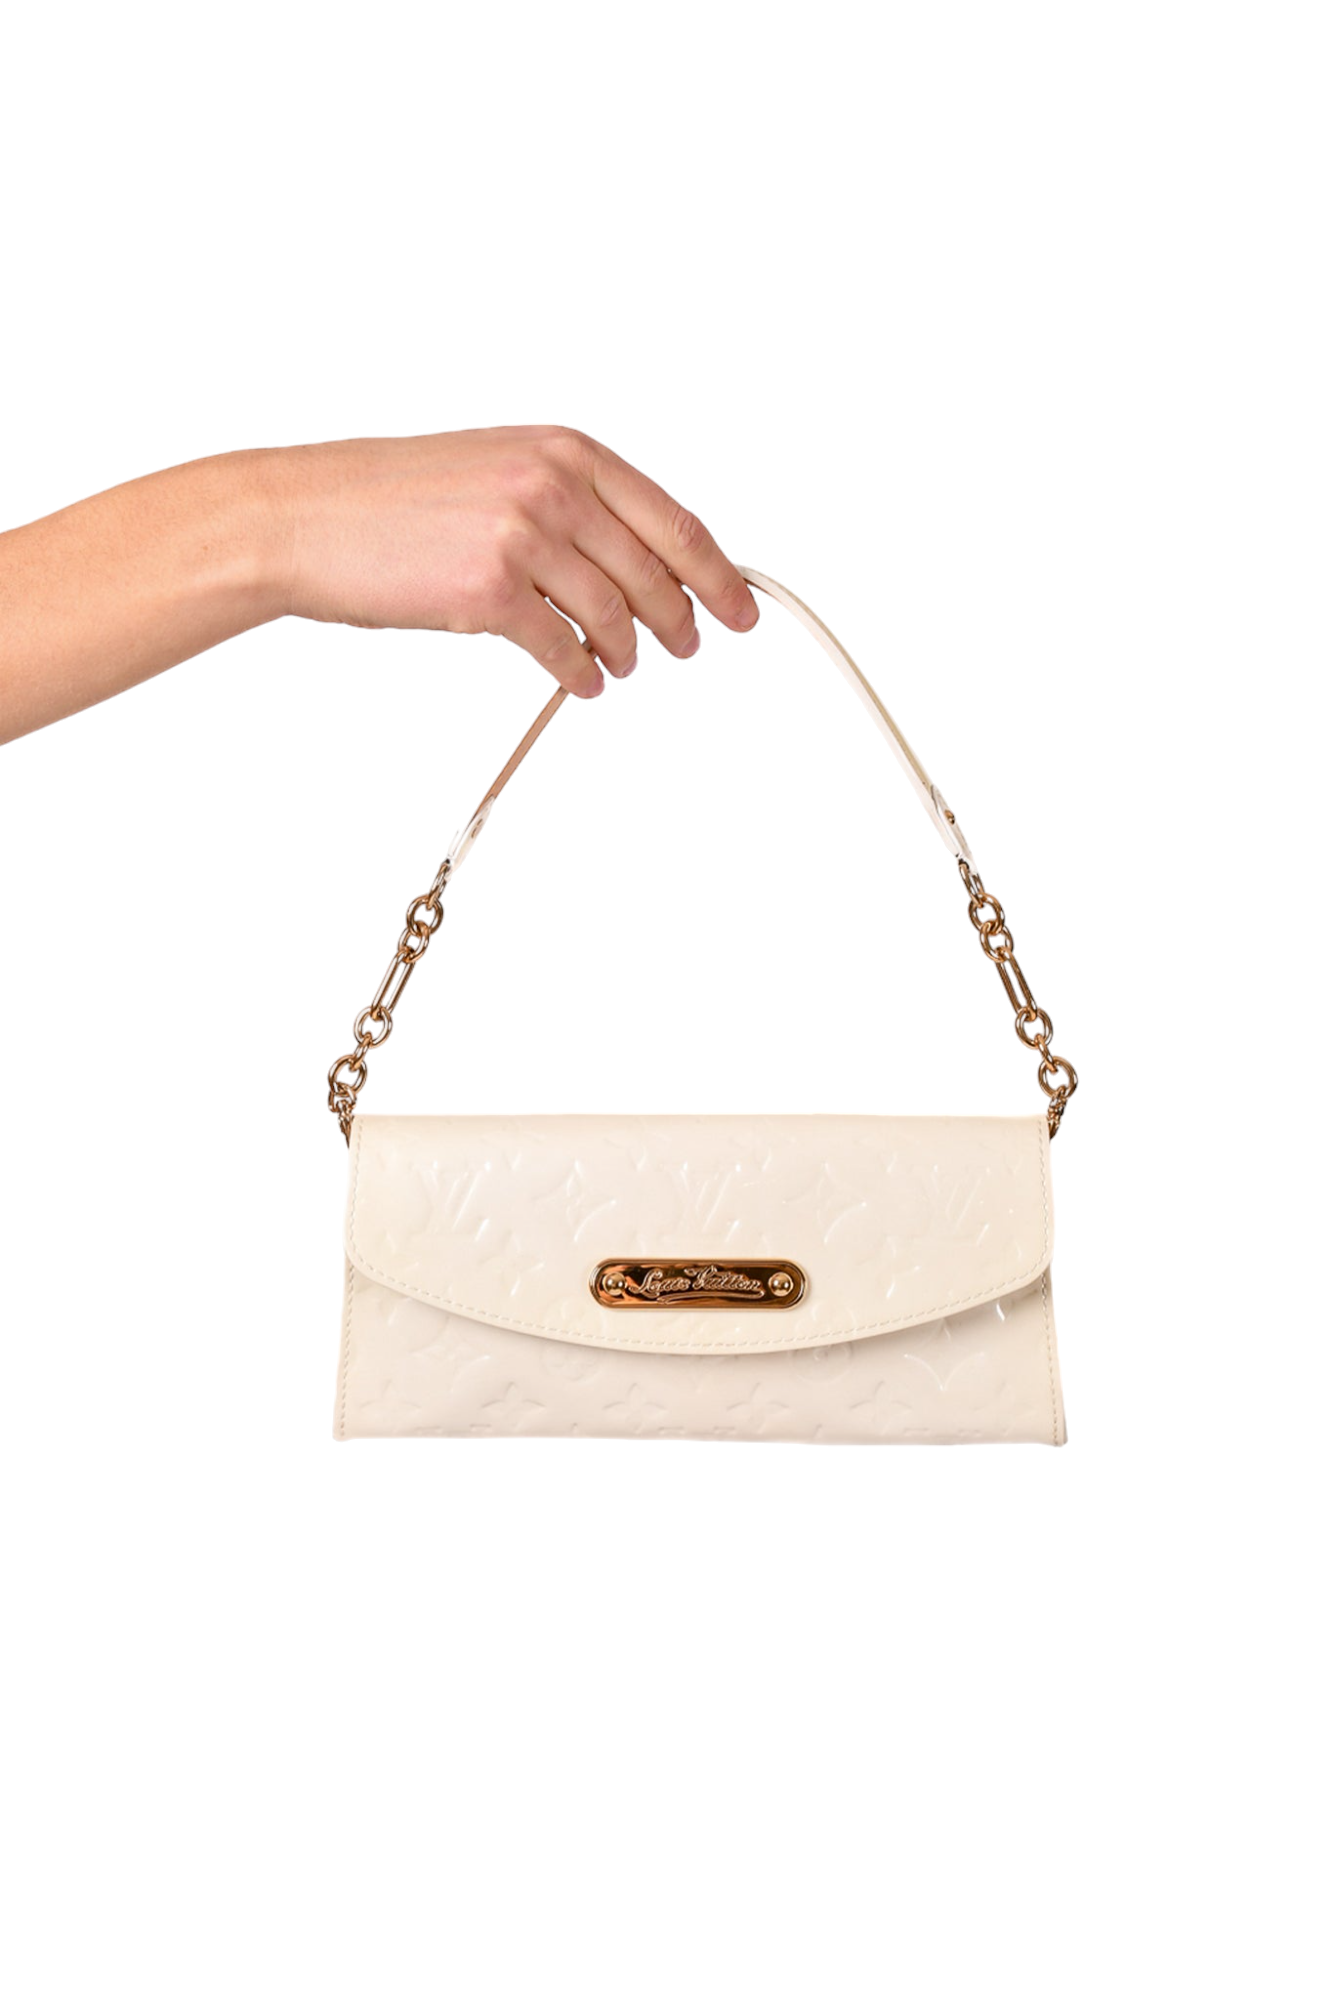 Authentic Louis Vuitton Vernis Monogram Beige Sunset Boulevard Clutch  Shoulder Bag